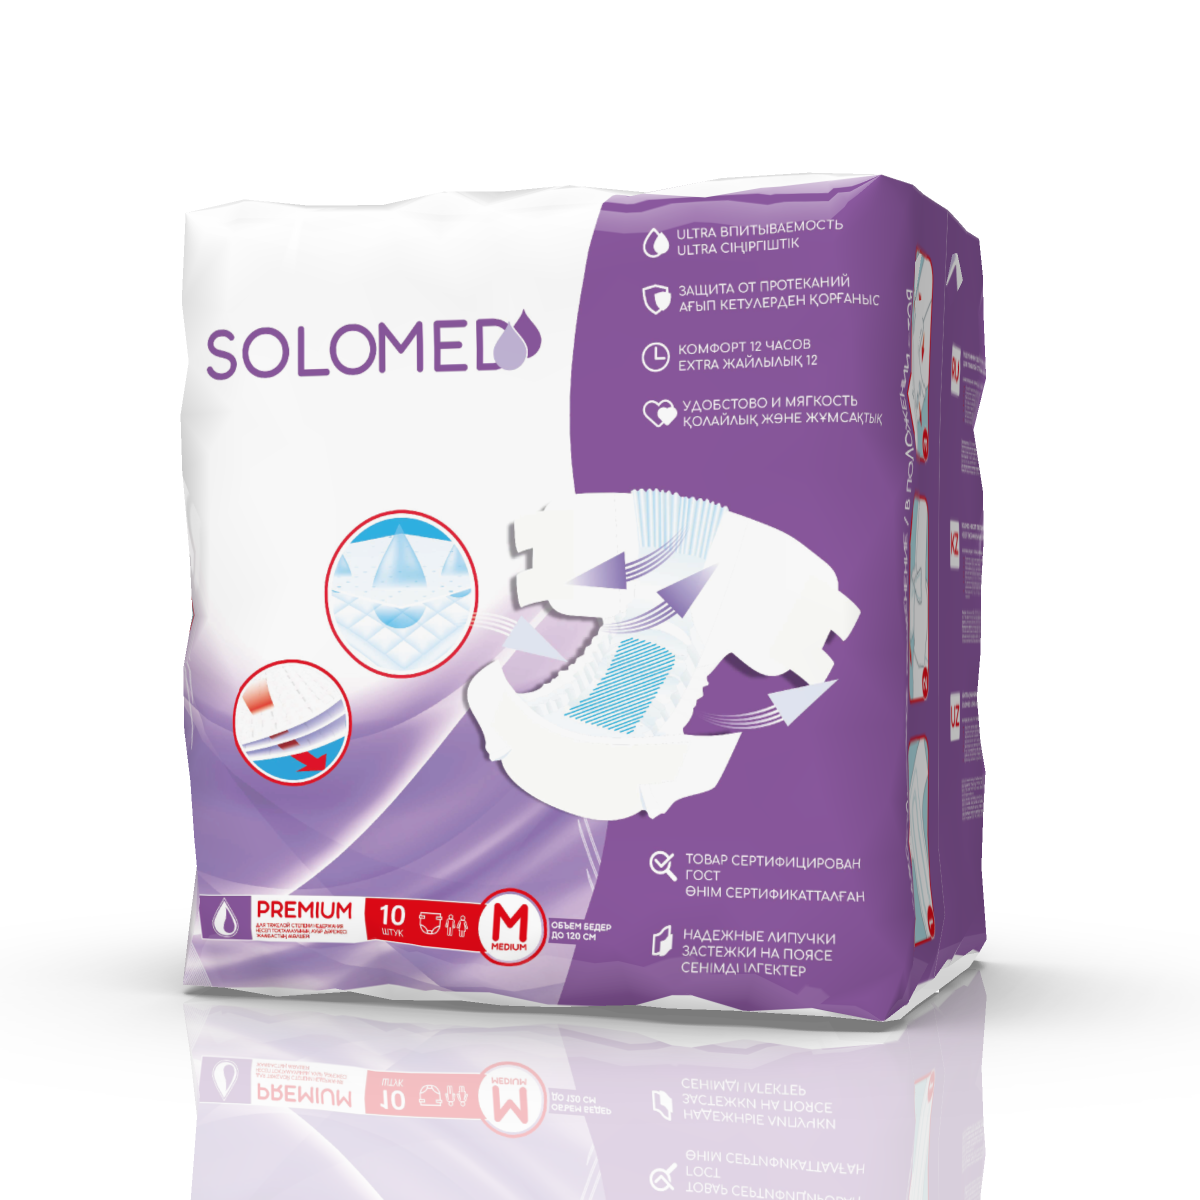 Solomed Premium, подгузники для взрослых (размер M), 10 шт. пазл гальштат 2000 элементов